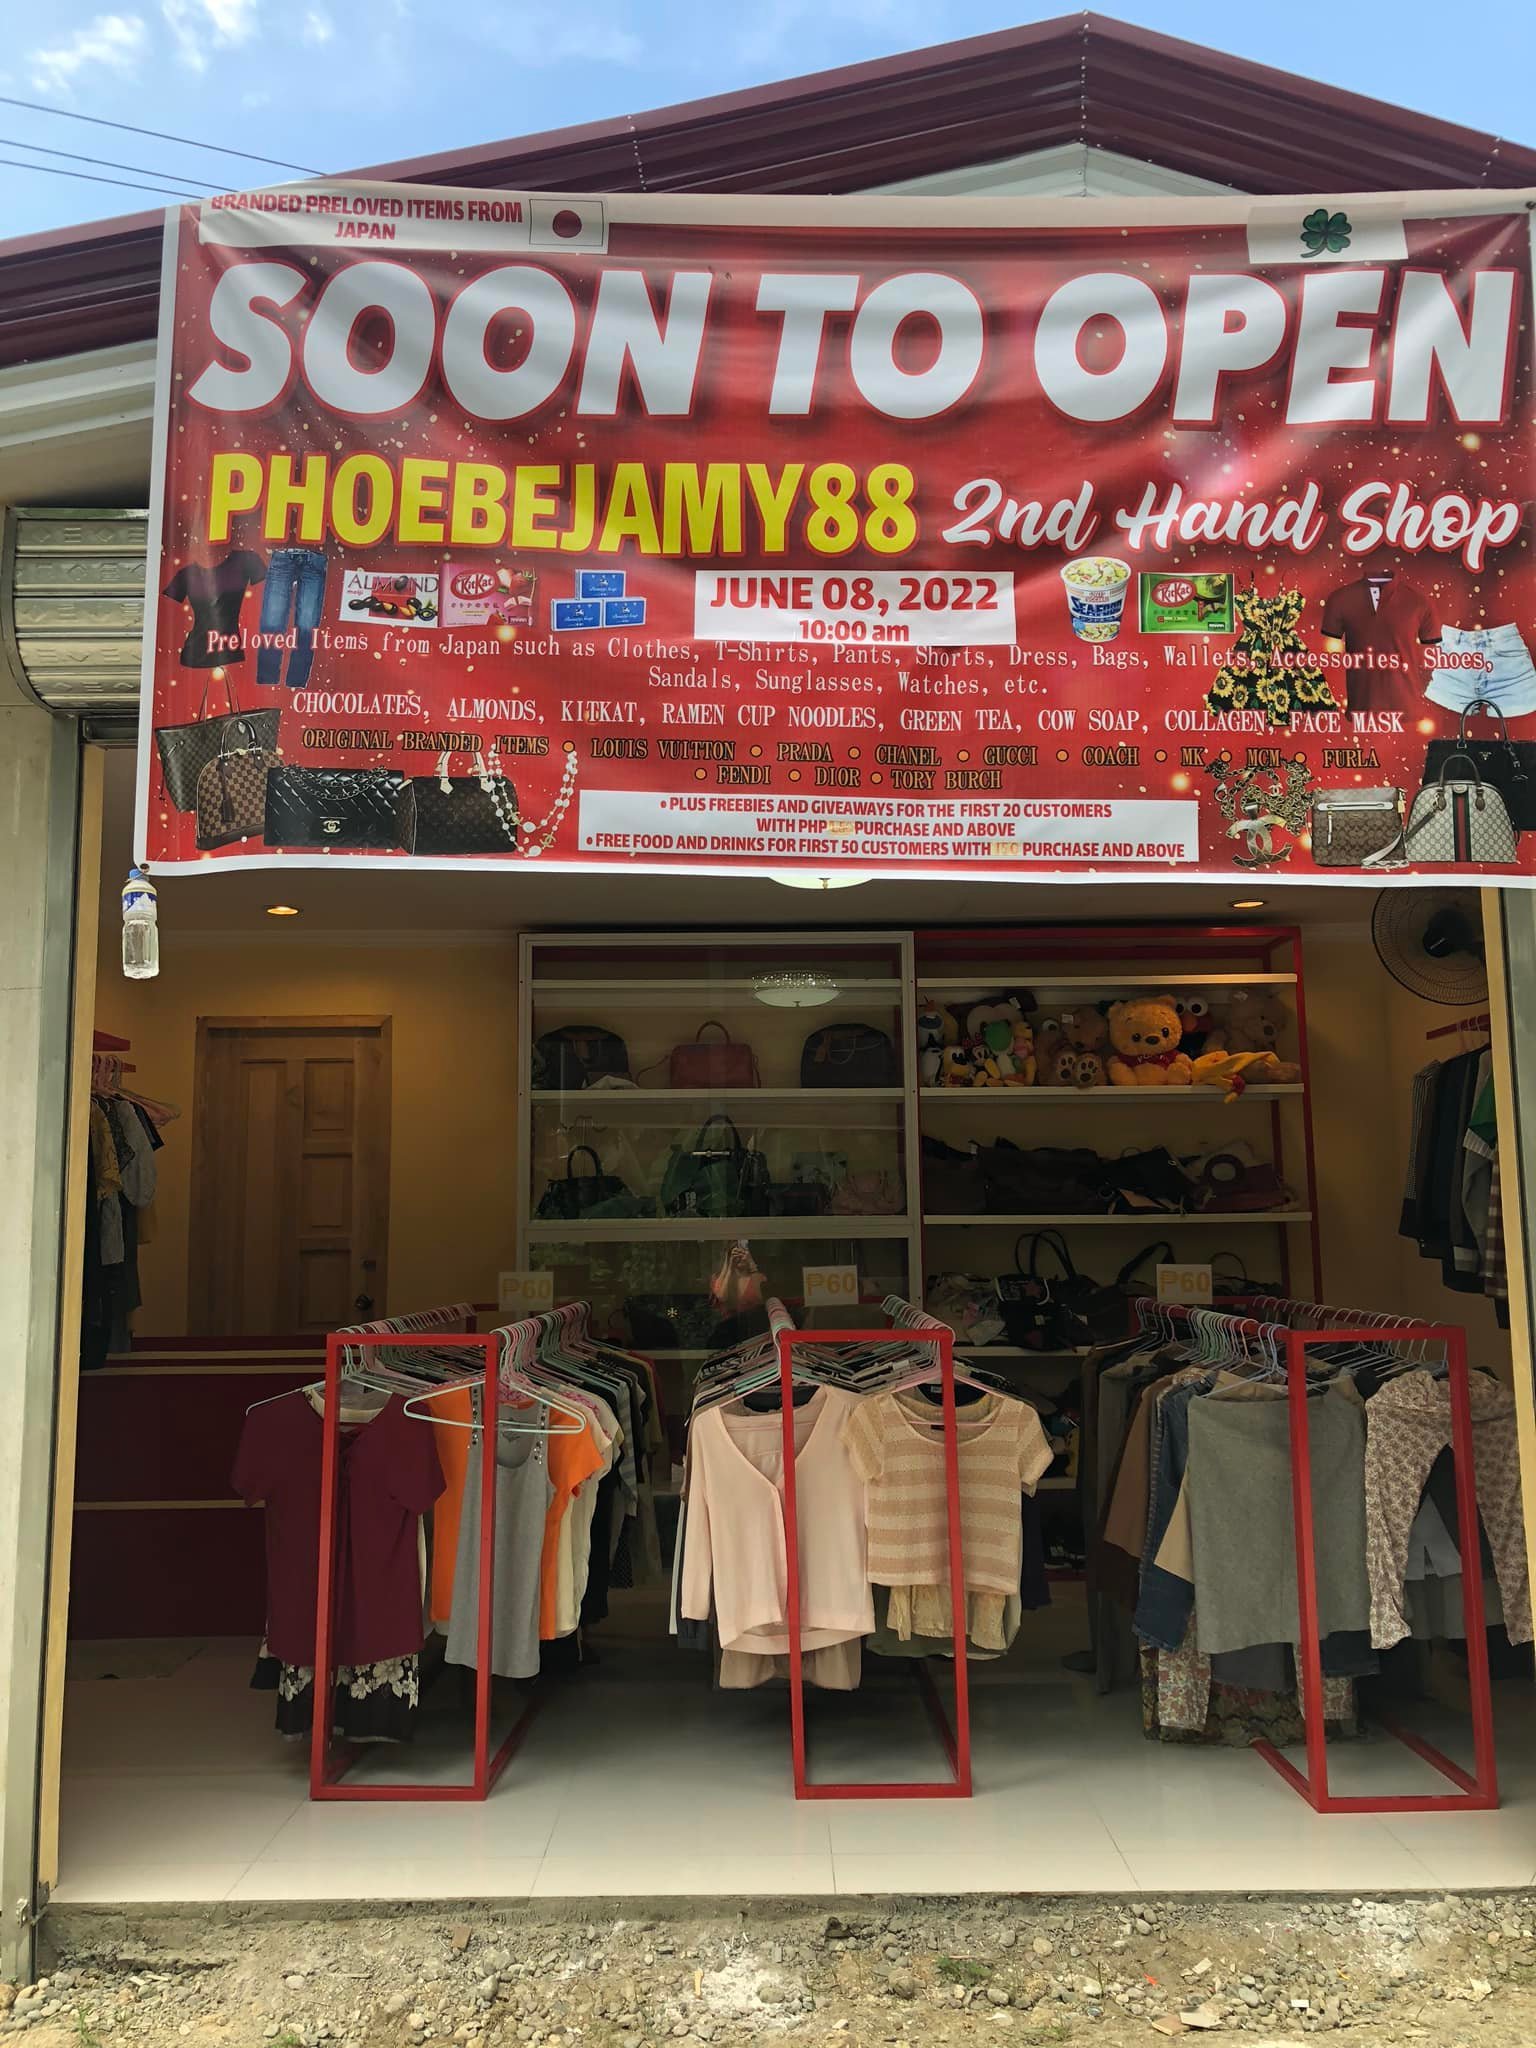 PhoebeJamy88 2nd Hand Shop Is Now Open